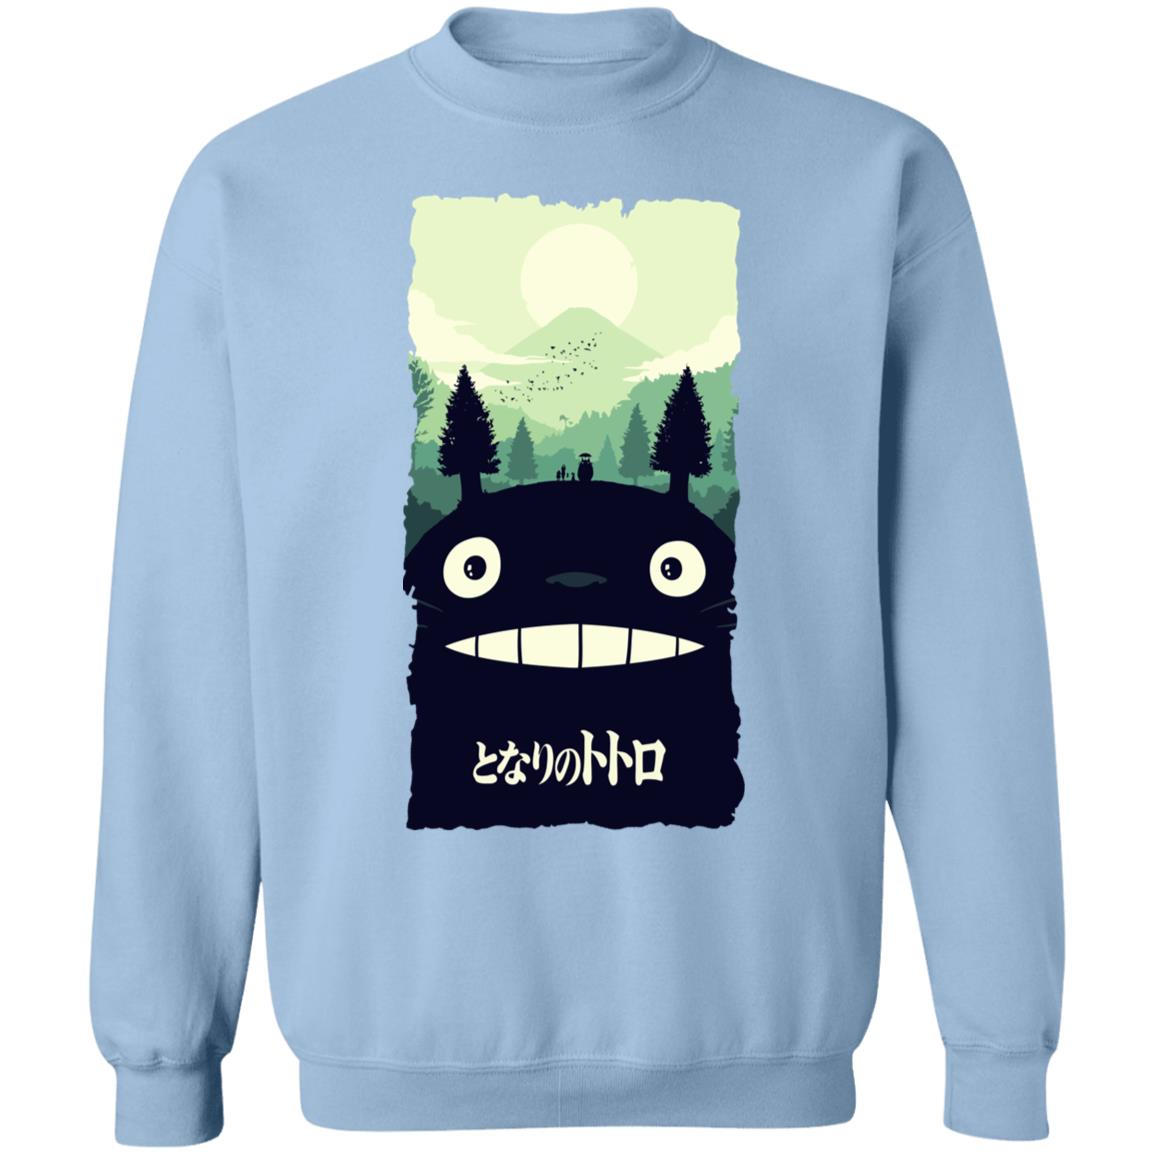 My Neighbor Totoro – Totoro Hill Sweatshirt